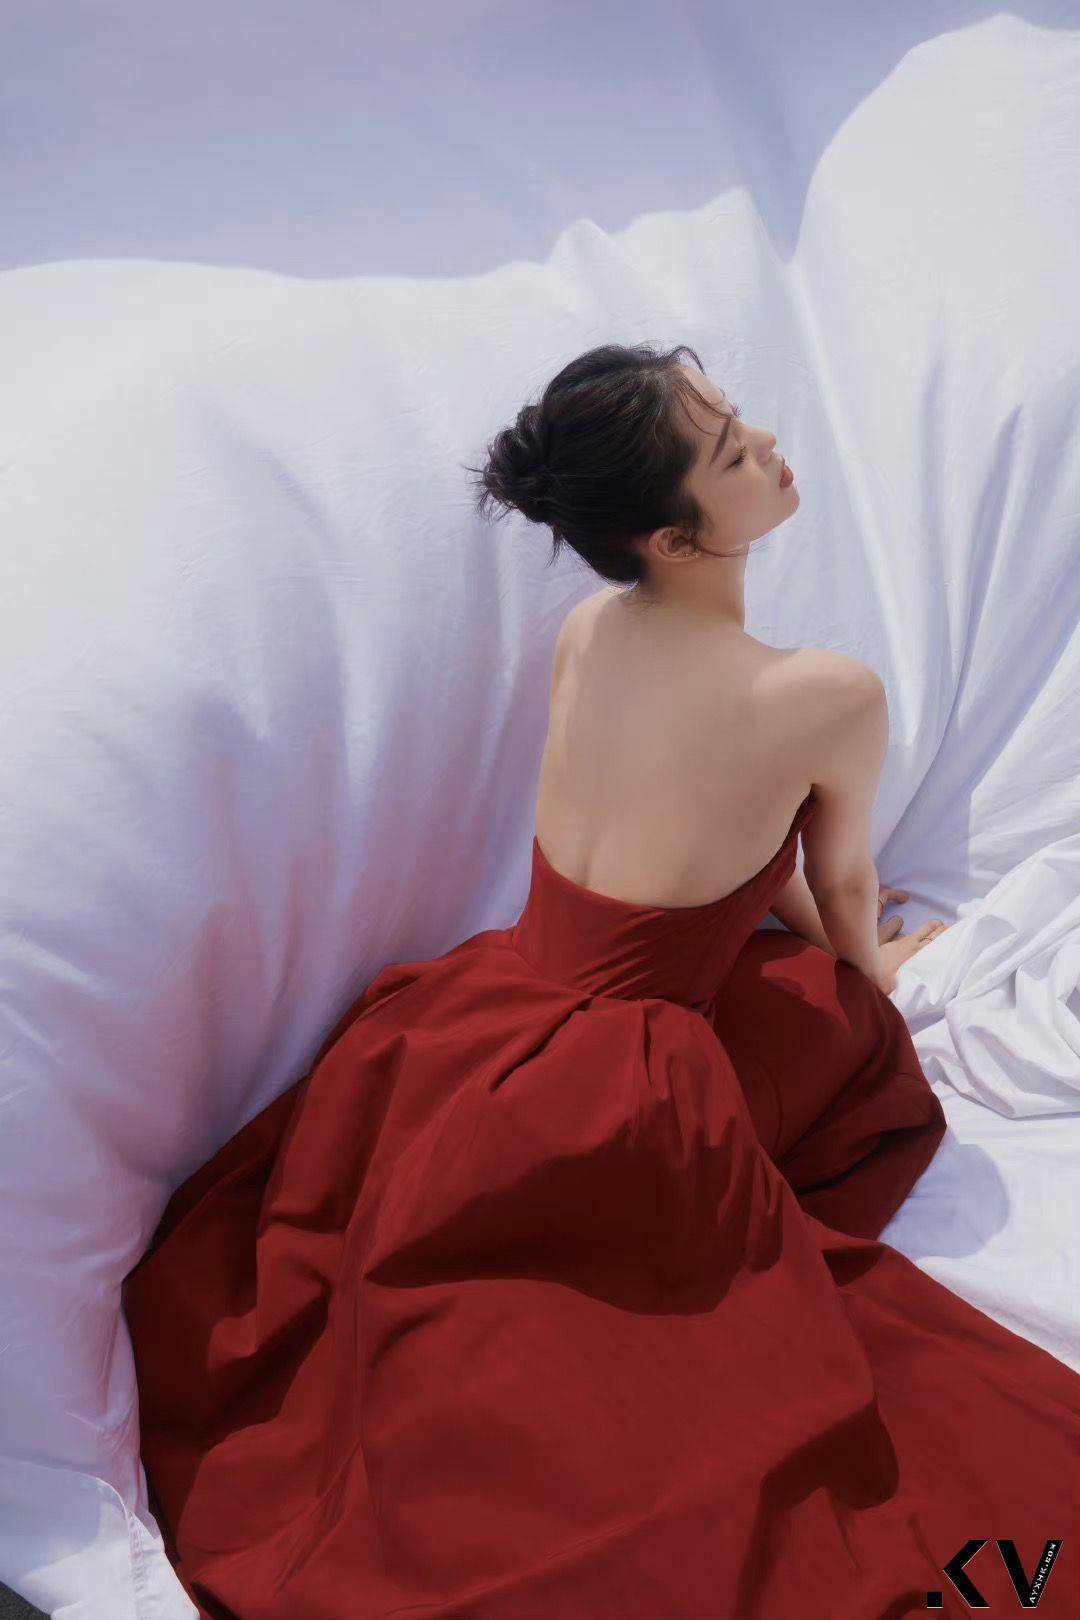 欧阳娜娜穿Jason Wu红裙成熟造型获好评！　勾勒绝美肩线气质满满 名人名流 图4张